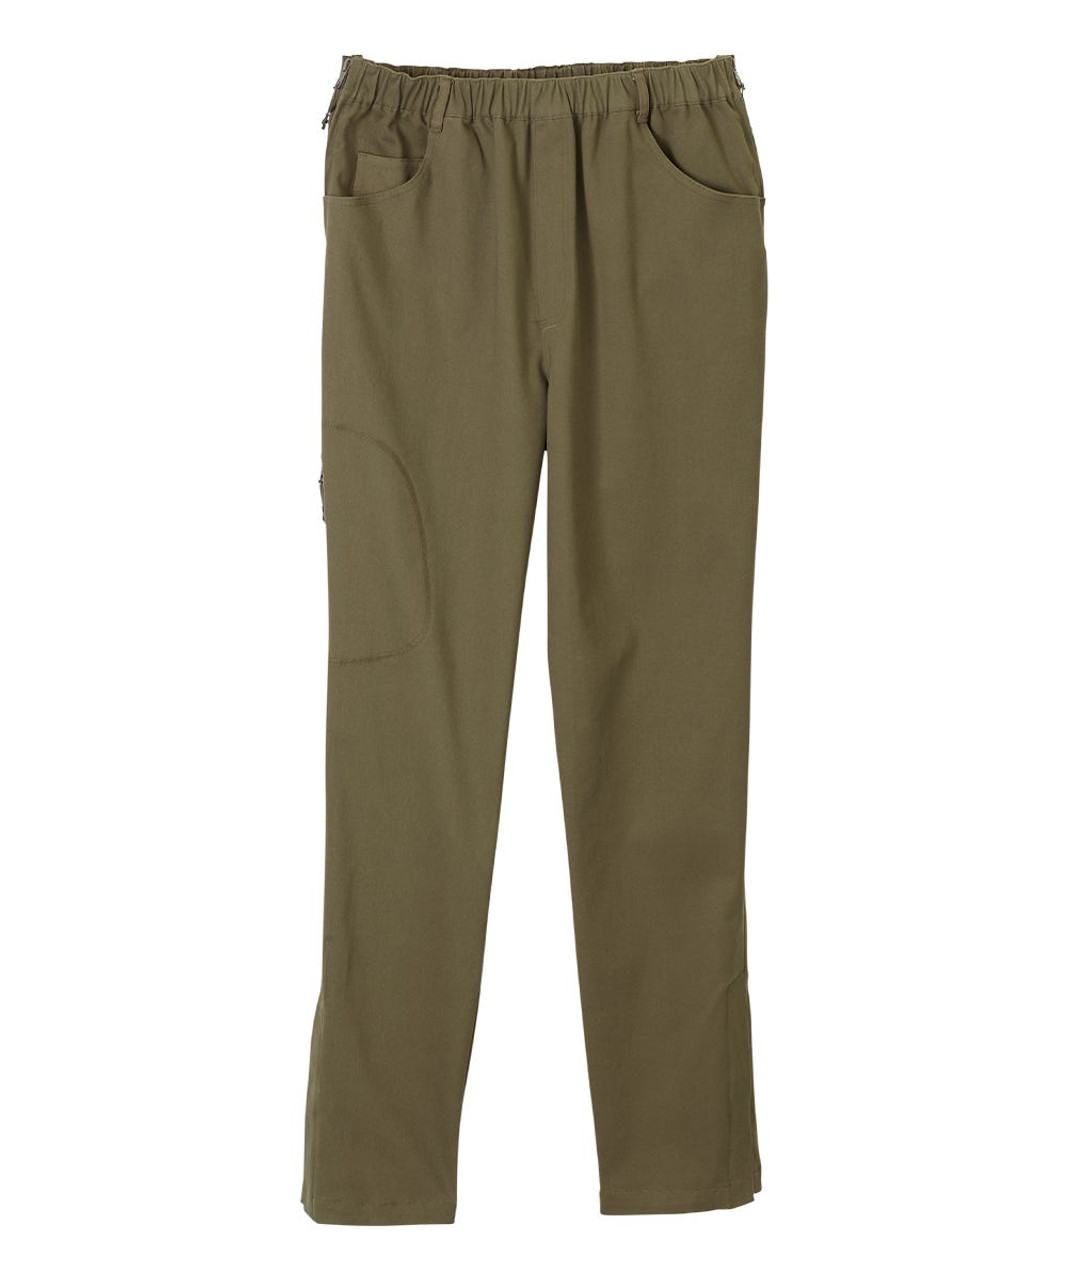 Silverts SV044 Senior Men's Side Zip Adaptive Pant Olive, Size=3XL, SV044-SV564-3XL